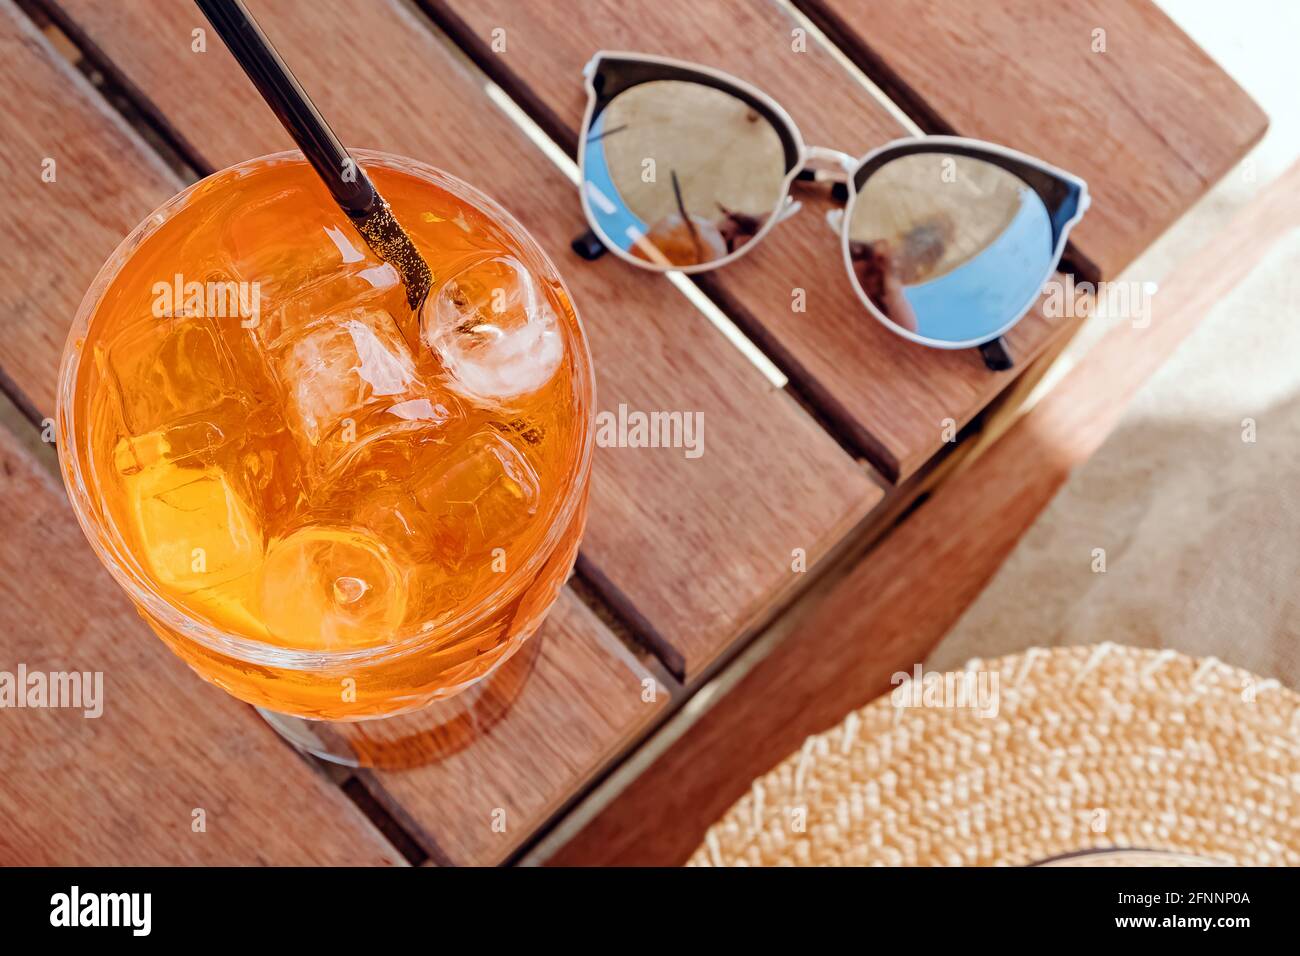 Ein Glas aperol Spritz und Sonnenbrille auf dem kleinen Holztisch  Stockfotografie - Alamy